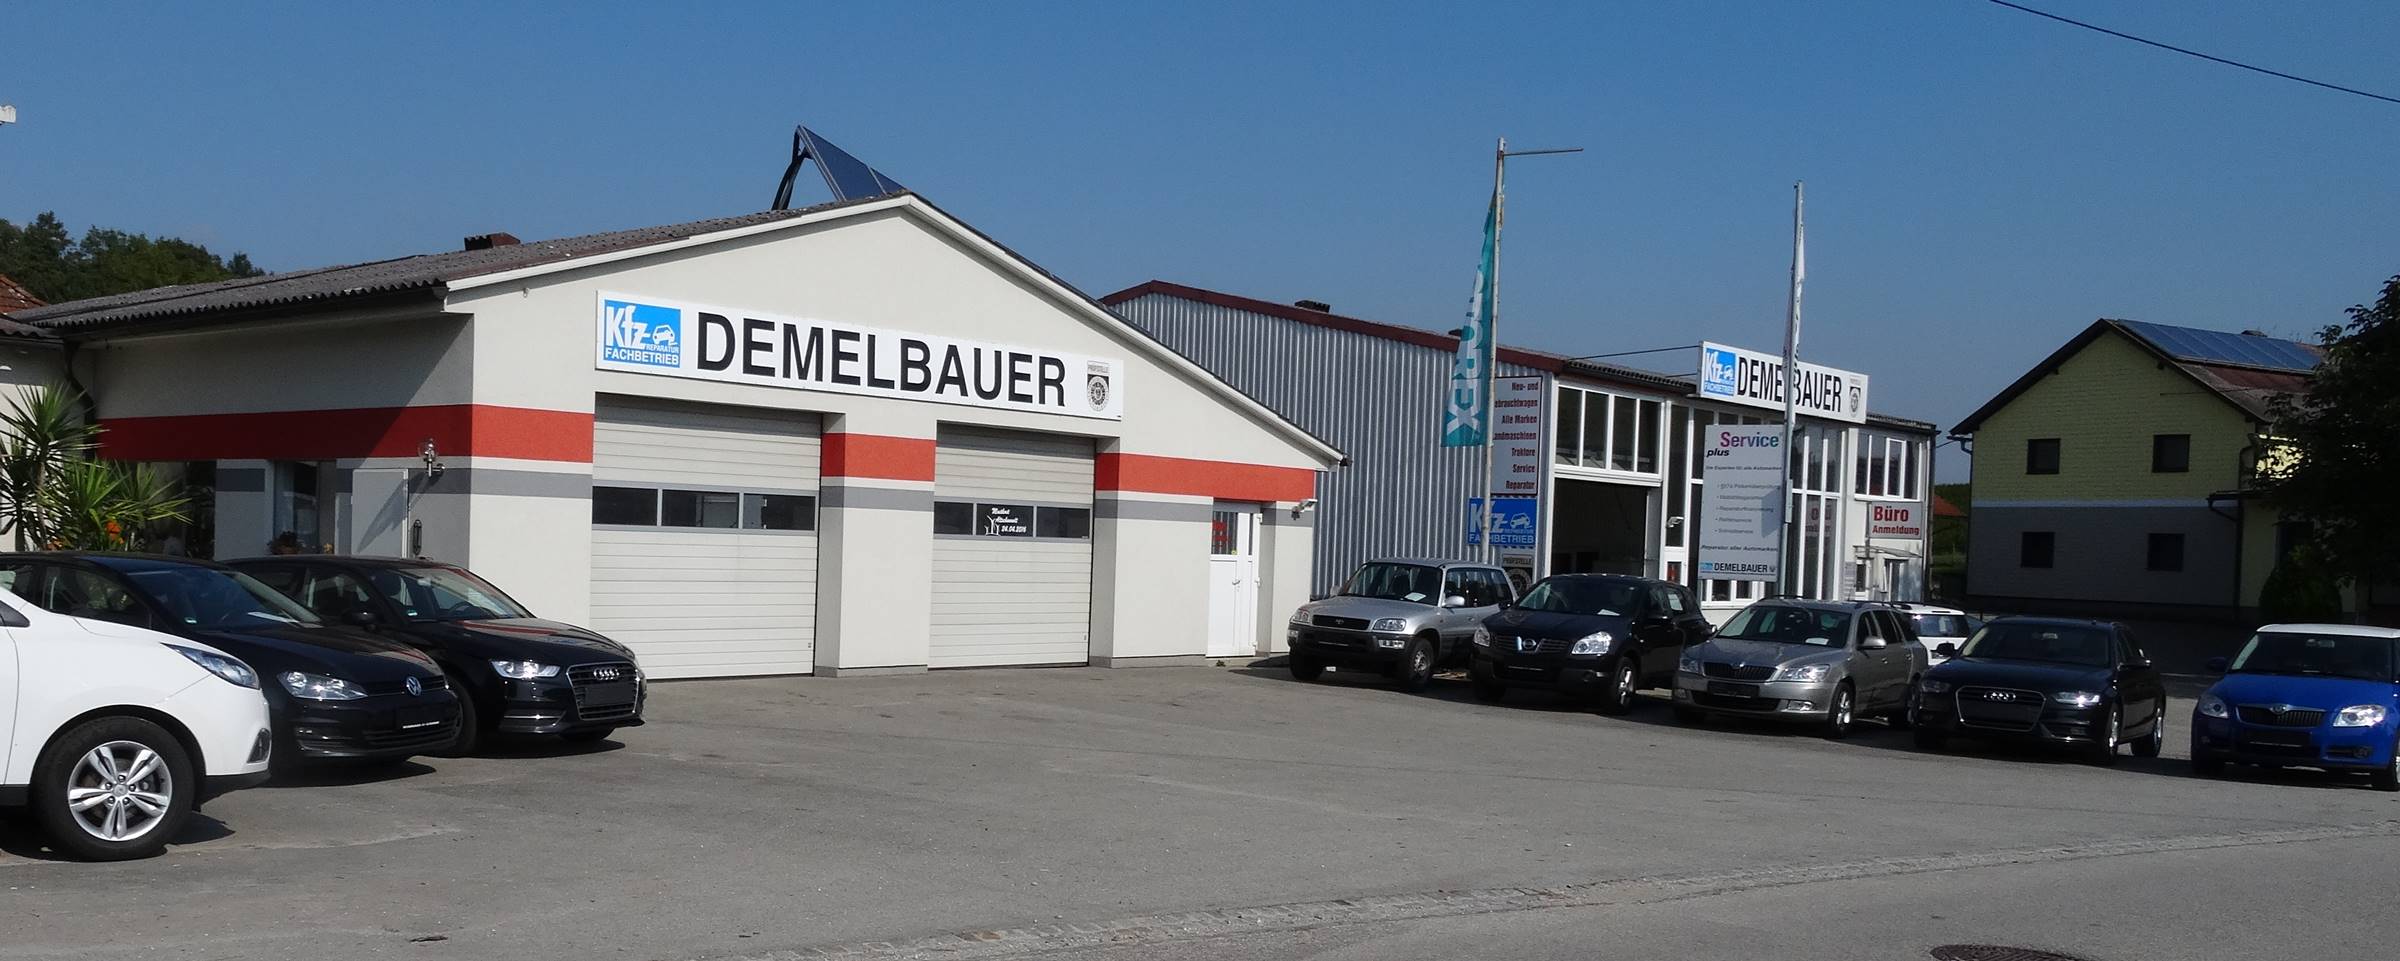 KFZ Demelbauer e.U. 